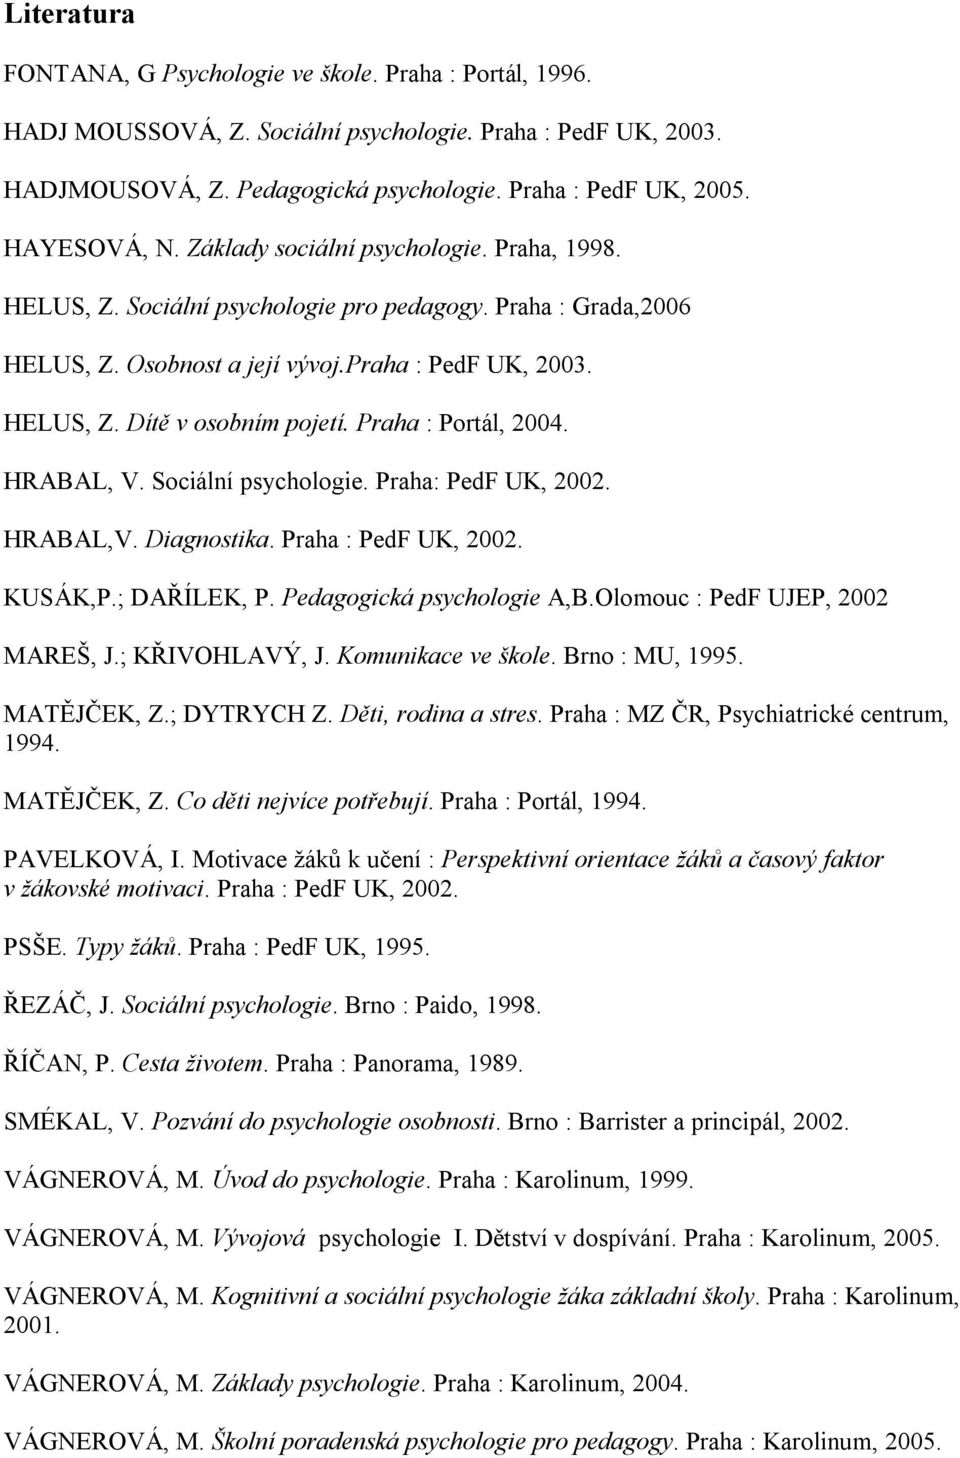 Praha : Portál, 2004. HRABAL, V. Sociální psychologie. Praha: PedF UK, 2002. HRABAL,V. Diagnostika. Praha : PedF UK, 2002. KUSÁK,P.; DAŘÍLEK, P. Pedagogická psychologie A,B.